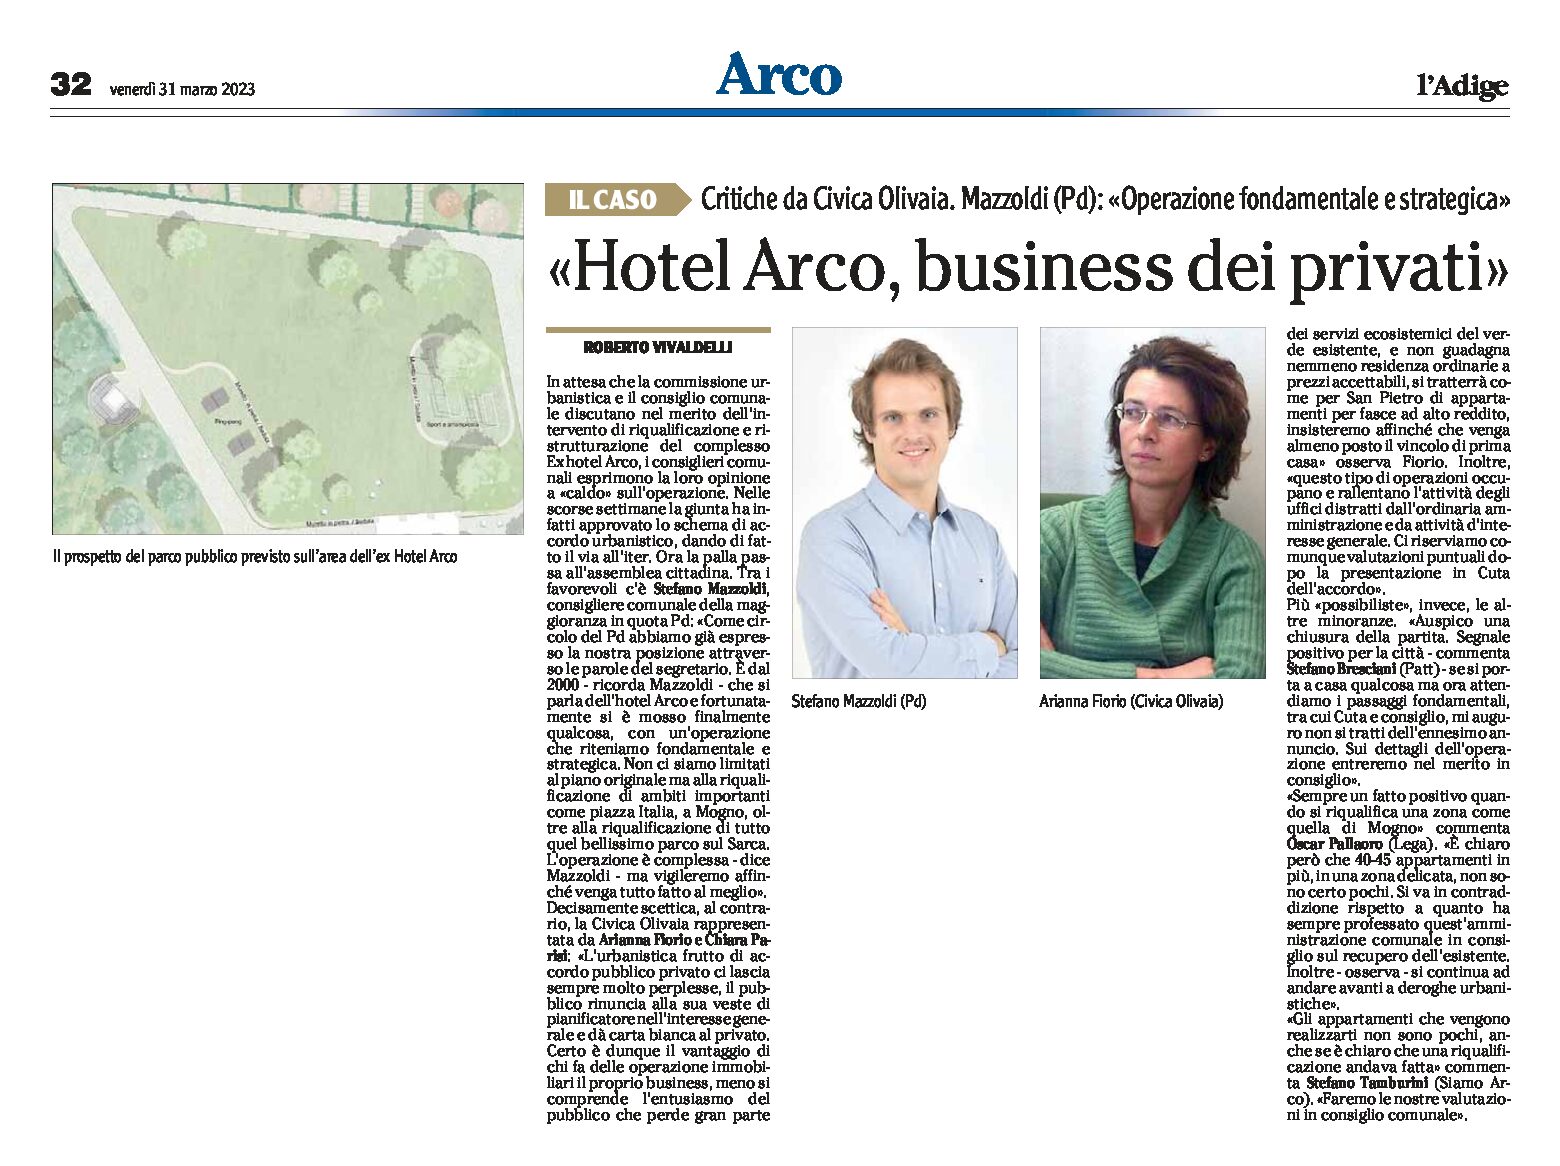 Hotel Arco: critiche da Civica Olivaia “business dei privati”